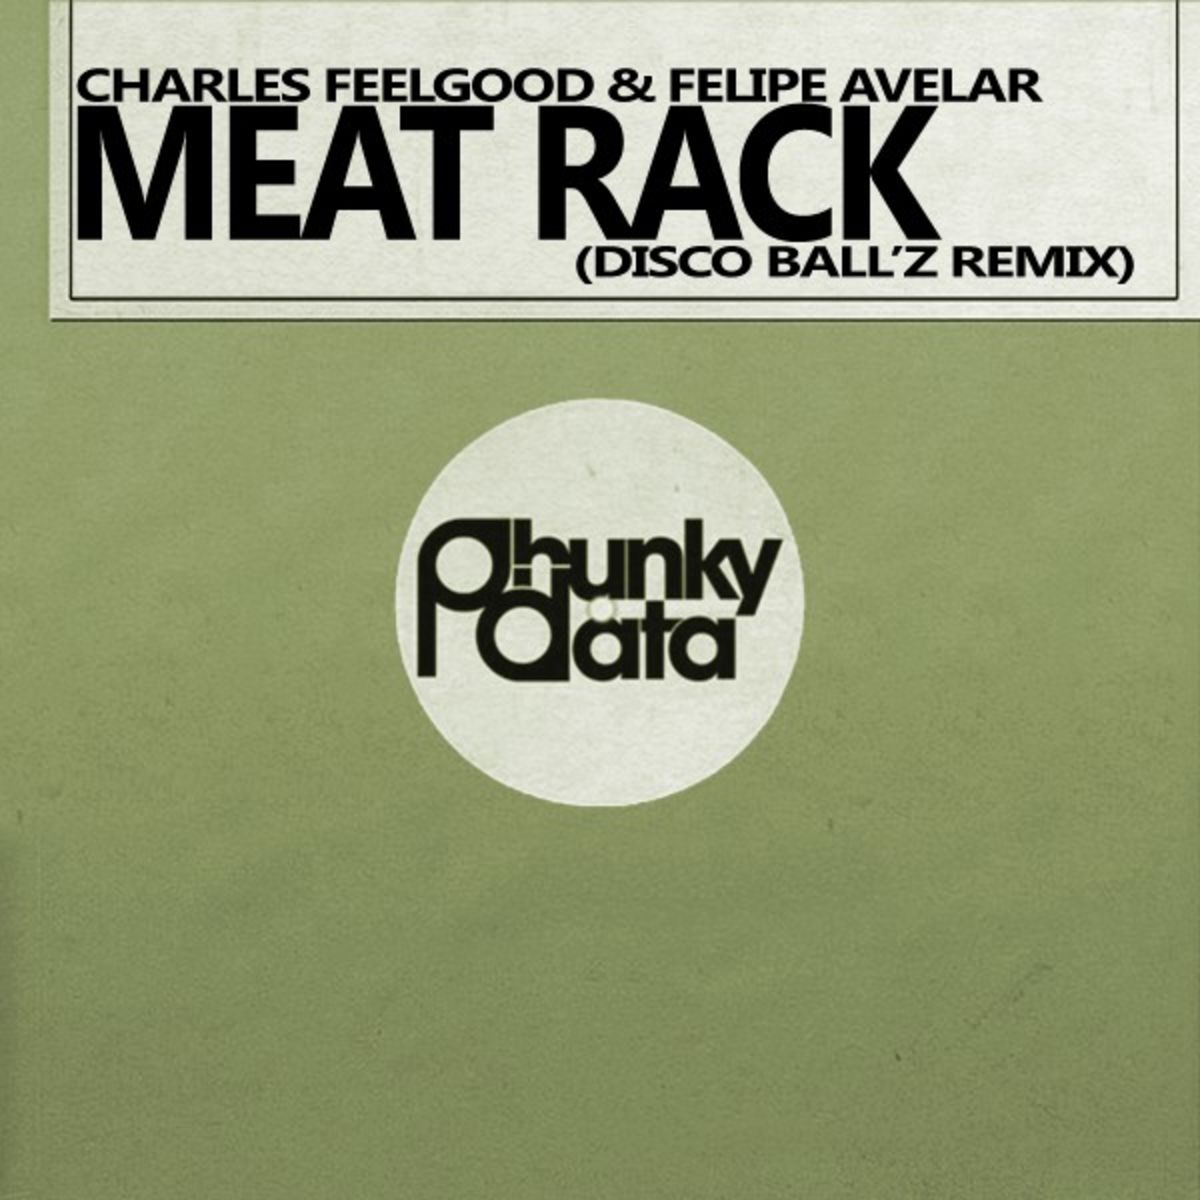 Charles Feelgood & Felipe Avelar - Meat Rack (Disco Ball'z Remix) / Phunky Data